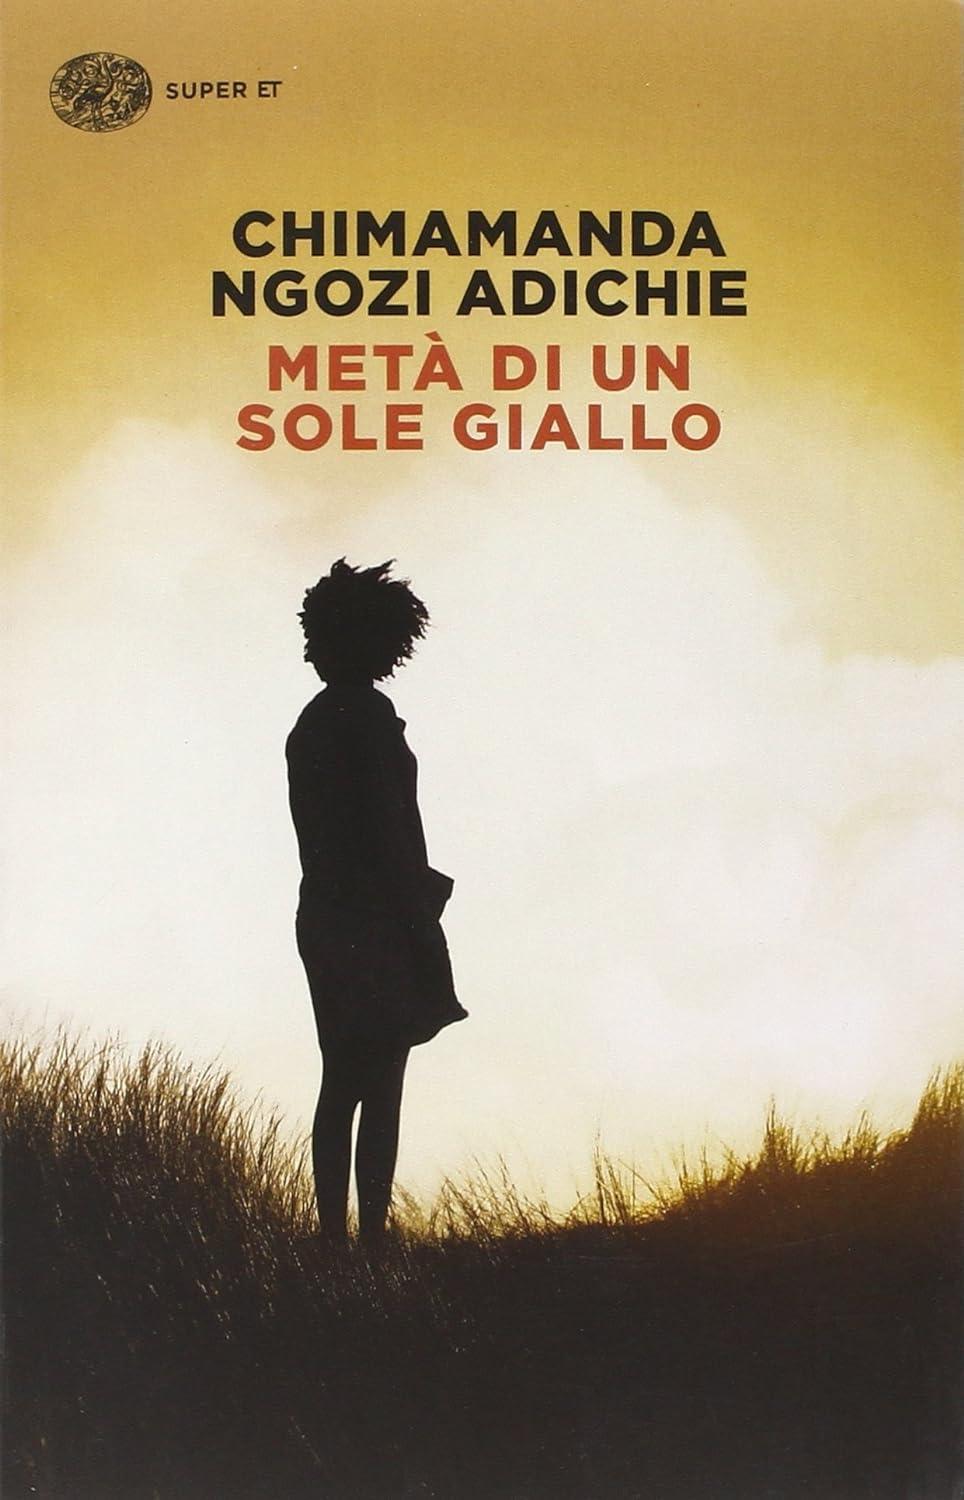 Libro "Metà di un sole giallo" di Chimamanda Ngozi Adichie